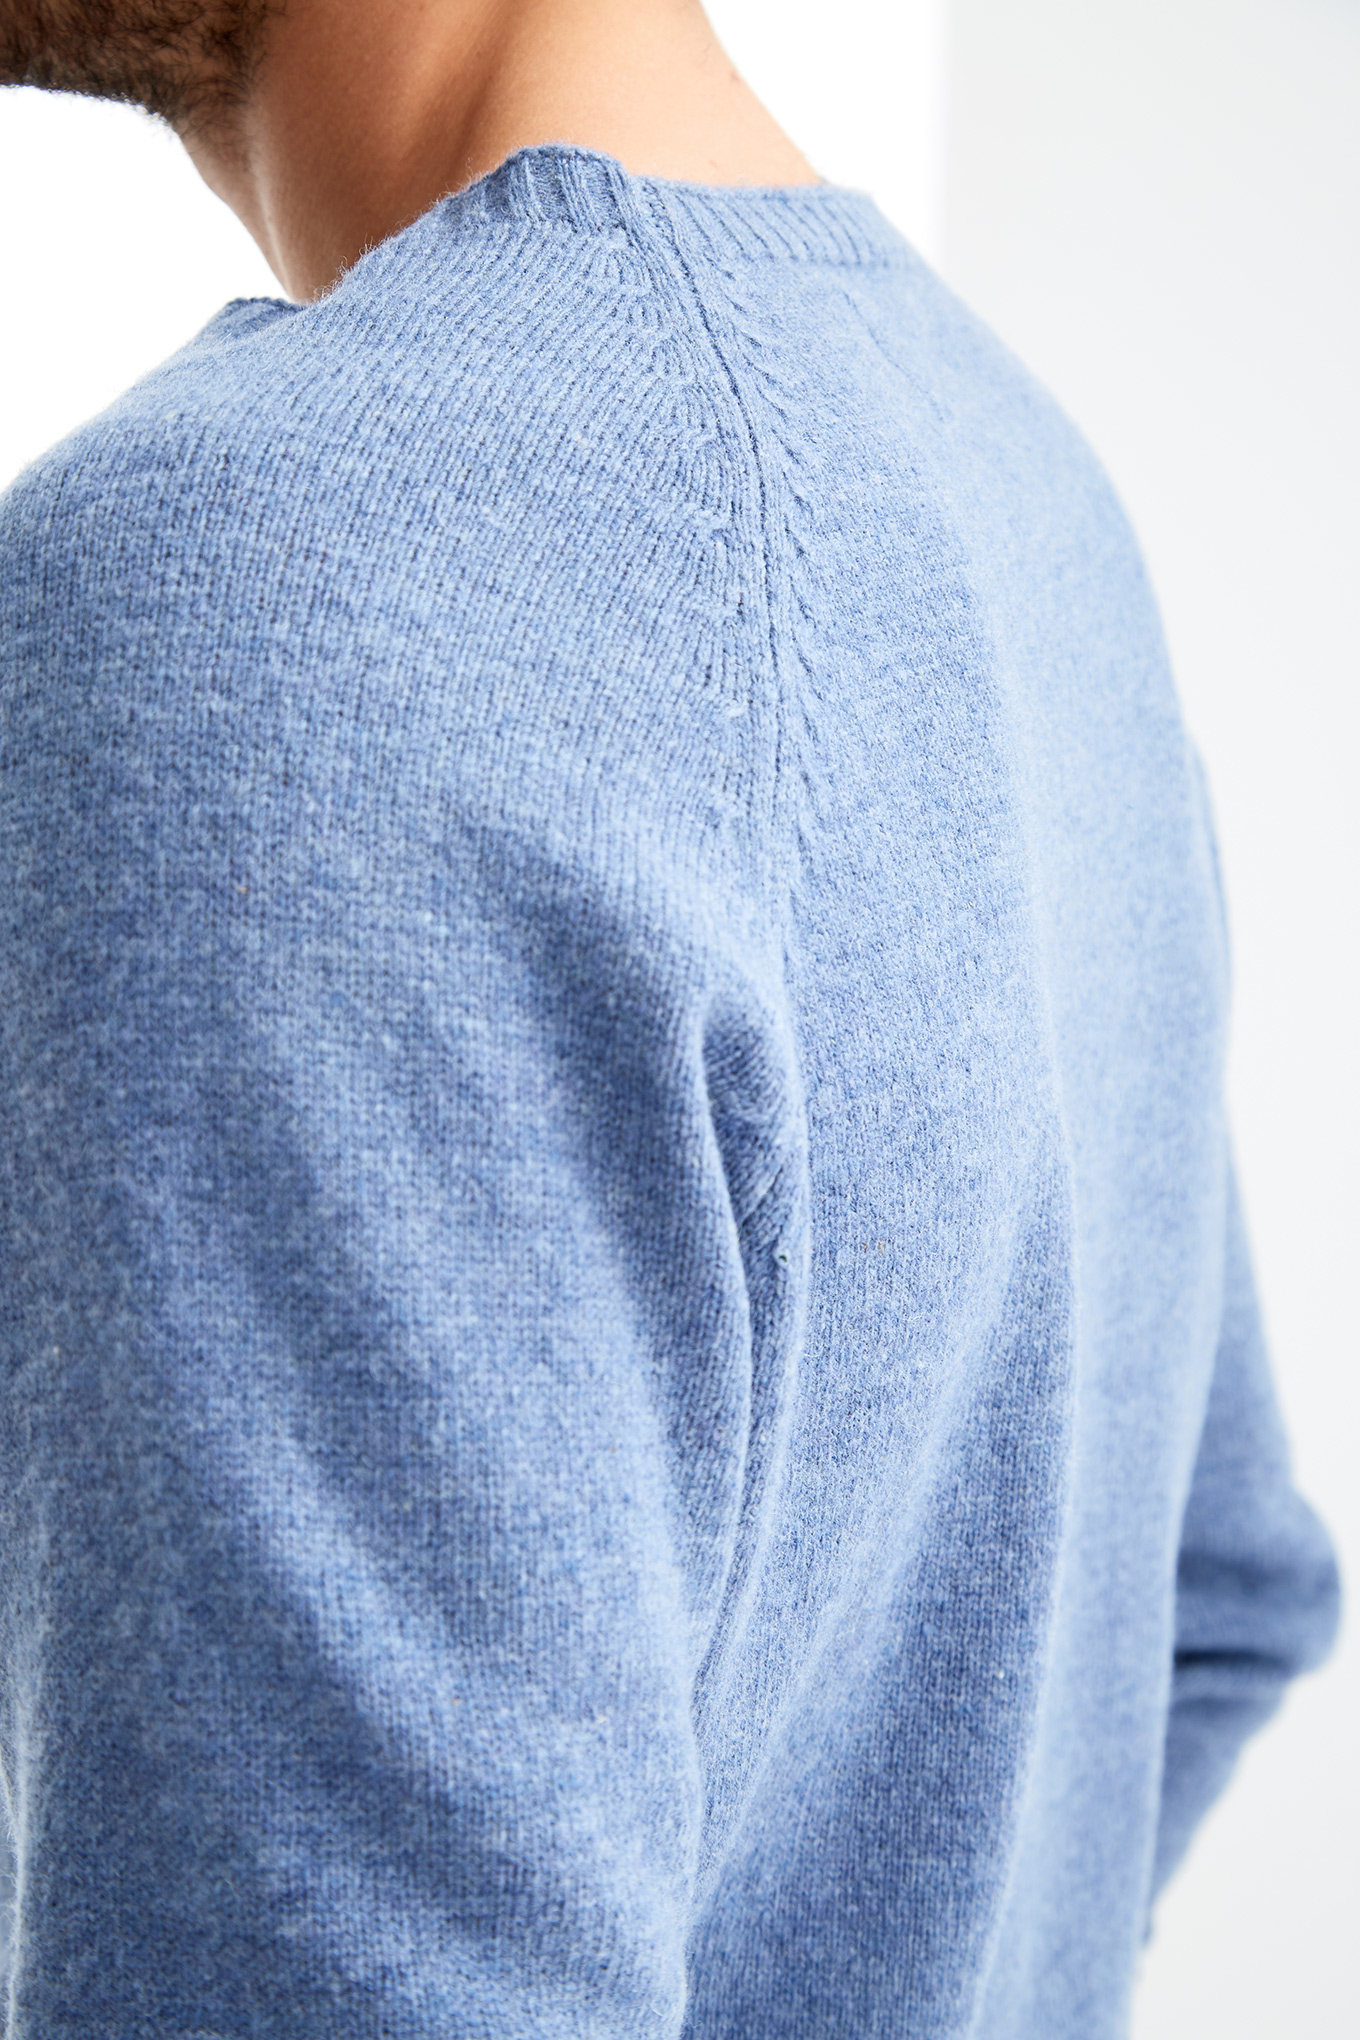 Sweater Medium Blue Casual Man